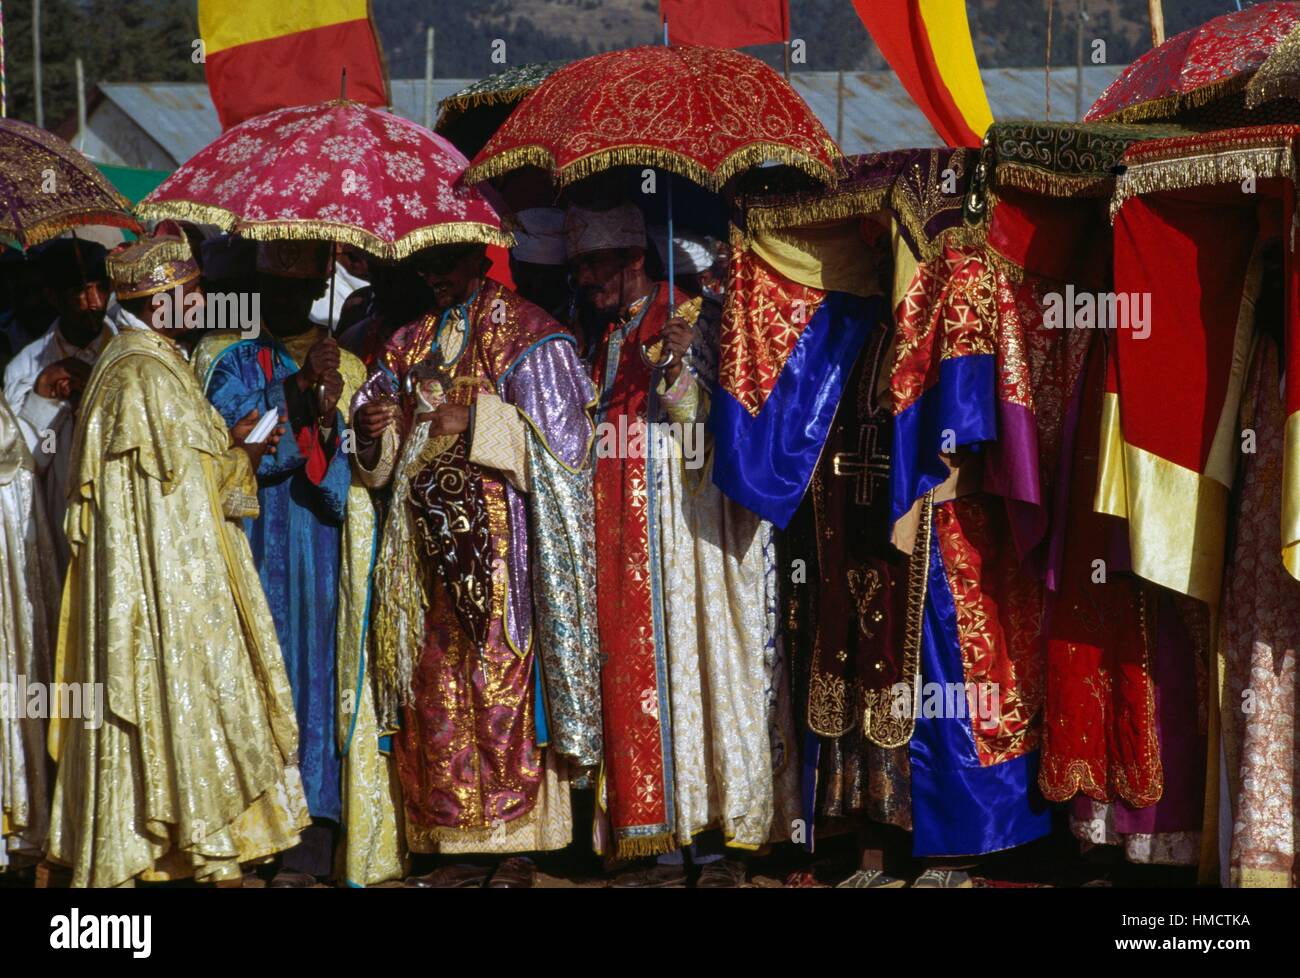 Priester tragen aufwändige Kleidung und Beschattung selbst mit Regenschirmen während Timkat Festival, koptische Epiphanias, Äthiopien. Stockfoto